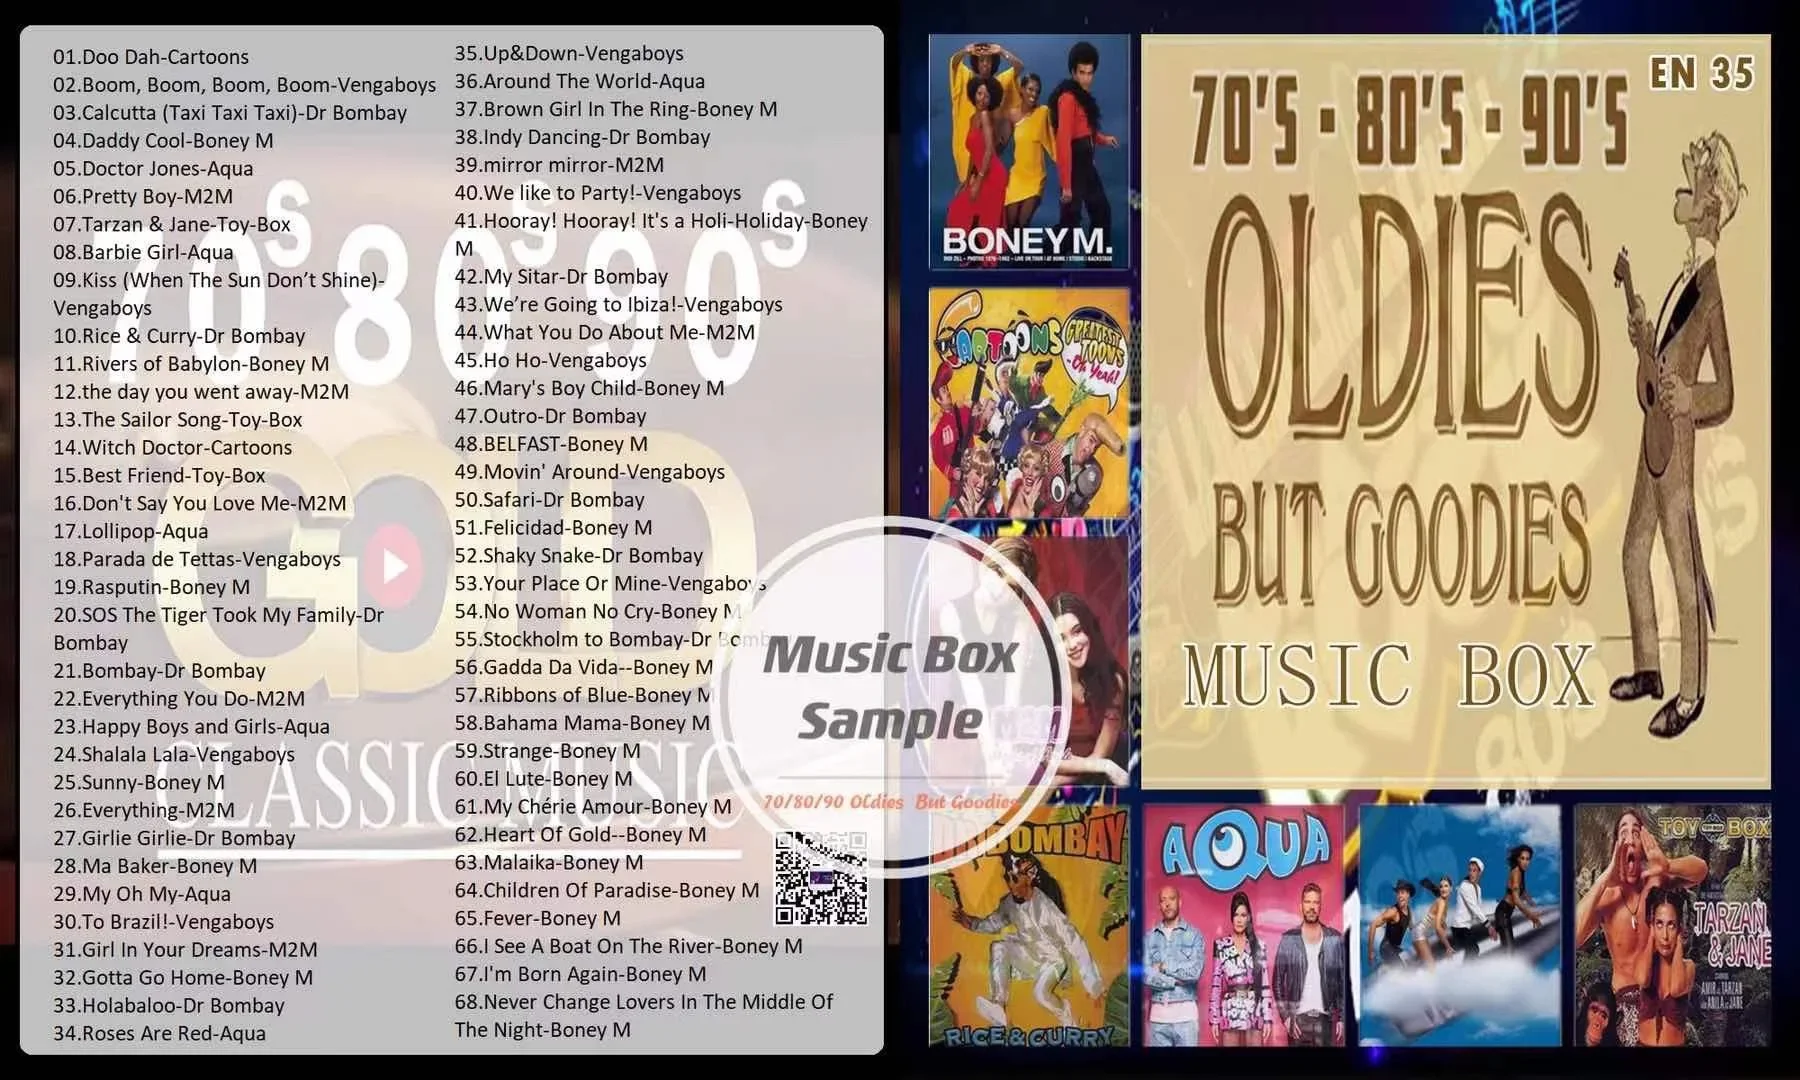 Usb Pendrive 70’s,80’s,90’s, Oldies But Goodies Songs EN35